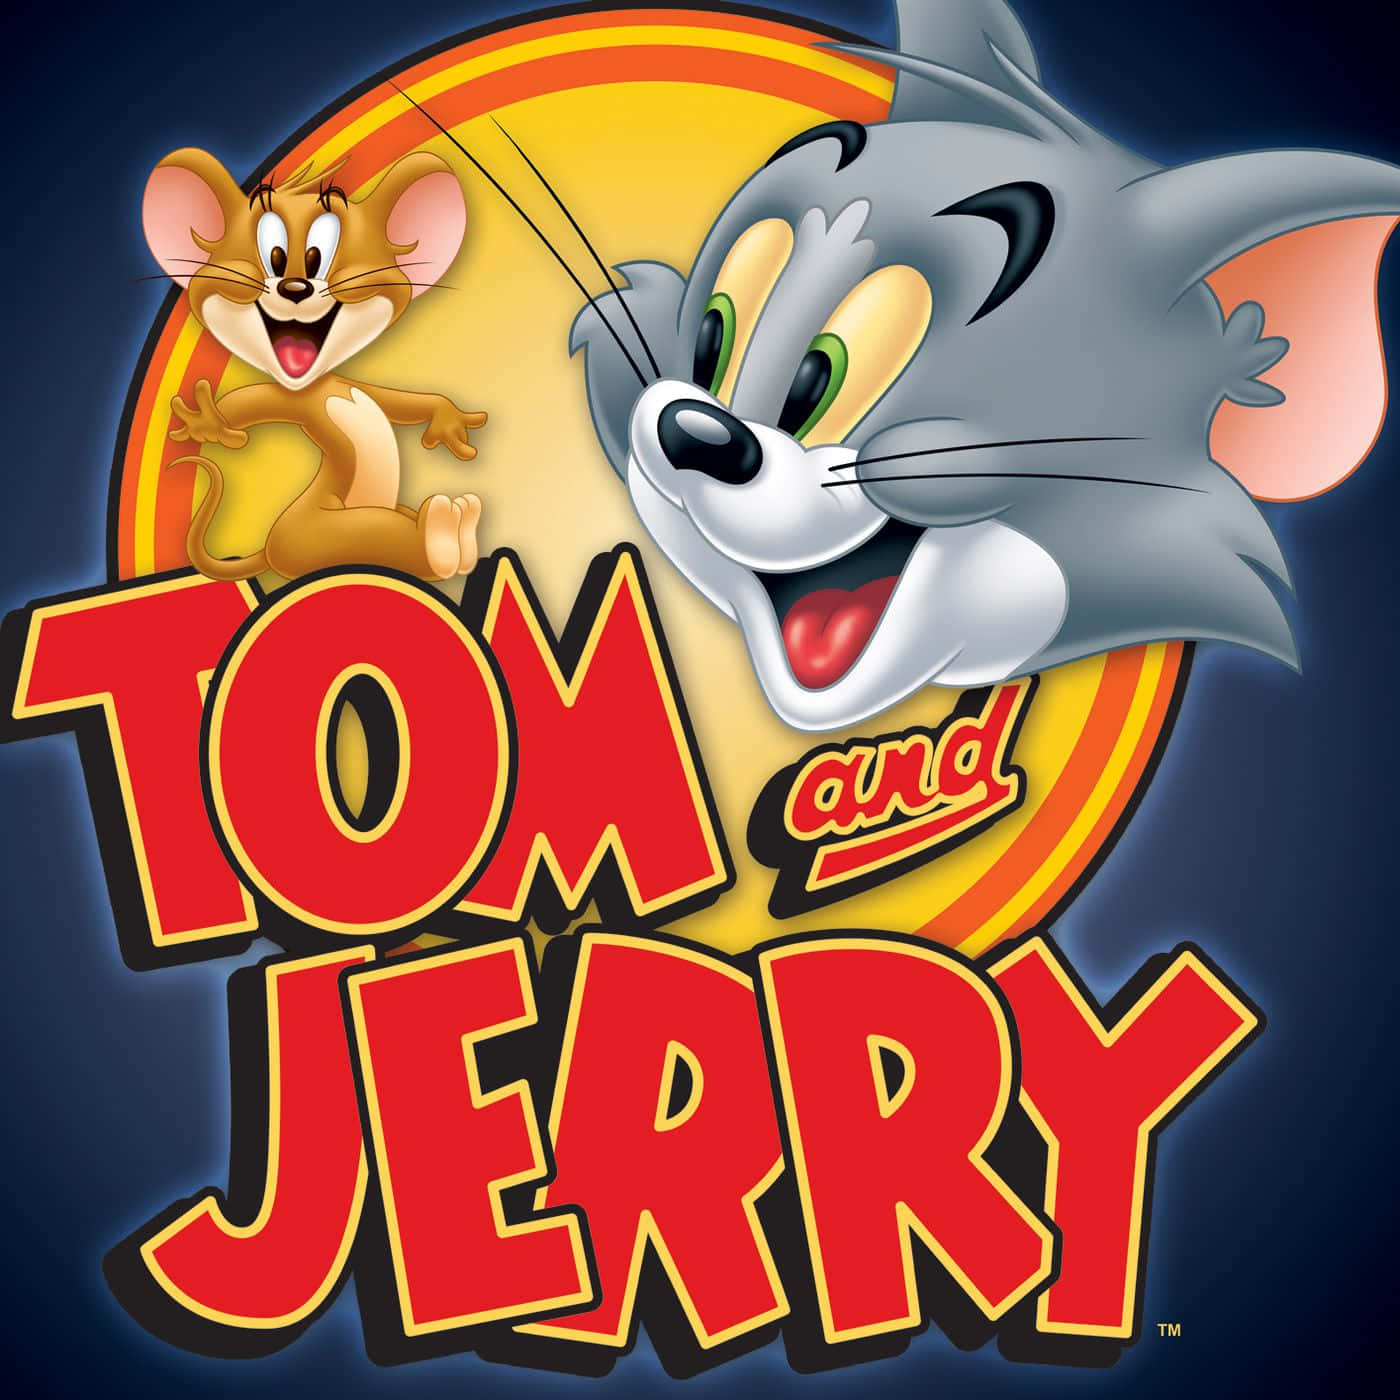 Tomy Jerry Tienen Una Larga Historia De Superarse Mutuamente.